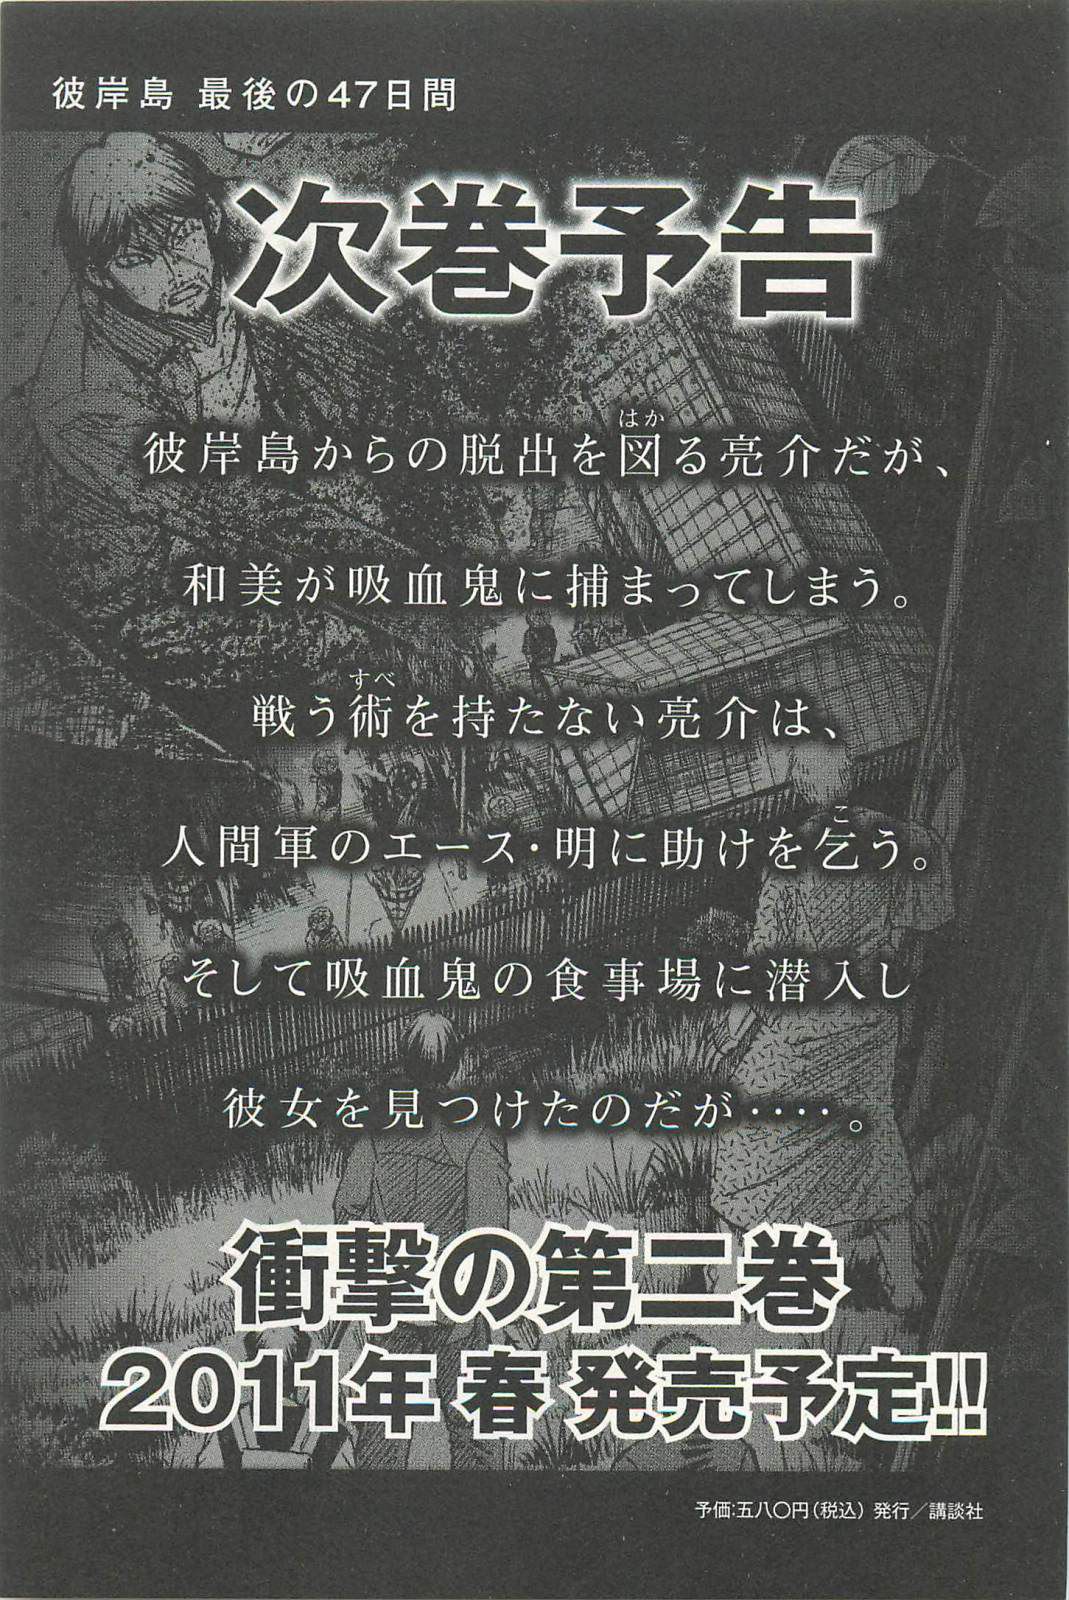 Higanjima Saigo no 47 Hiai Vol. 1 Ch. 9 Key